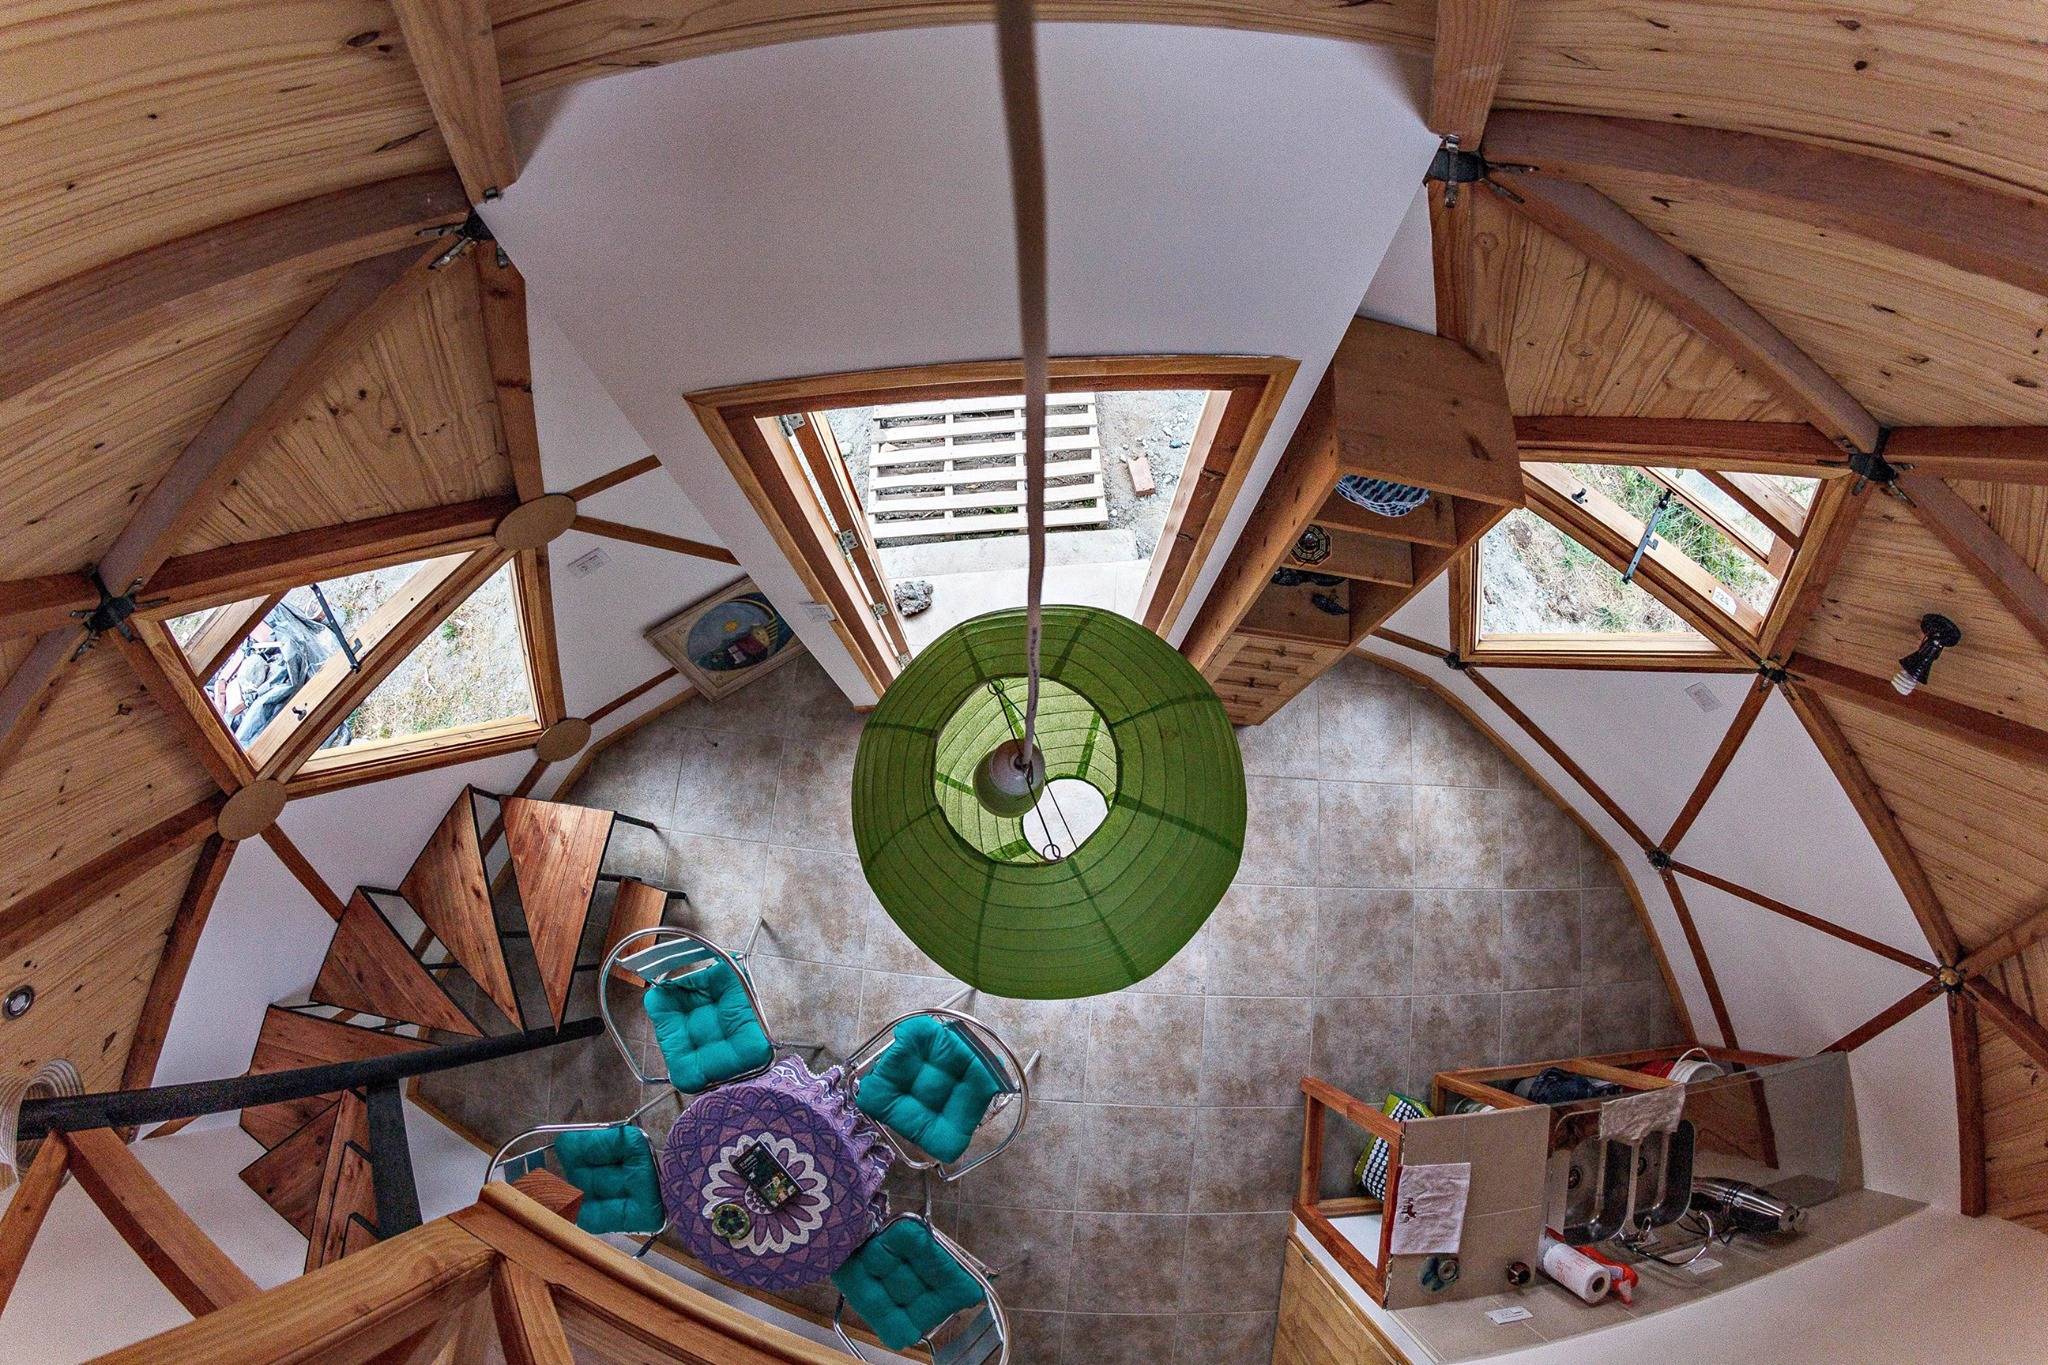 Купольный дом: технология строительства, установка окон и дверей, видео и фото